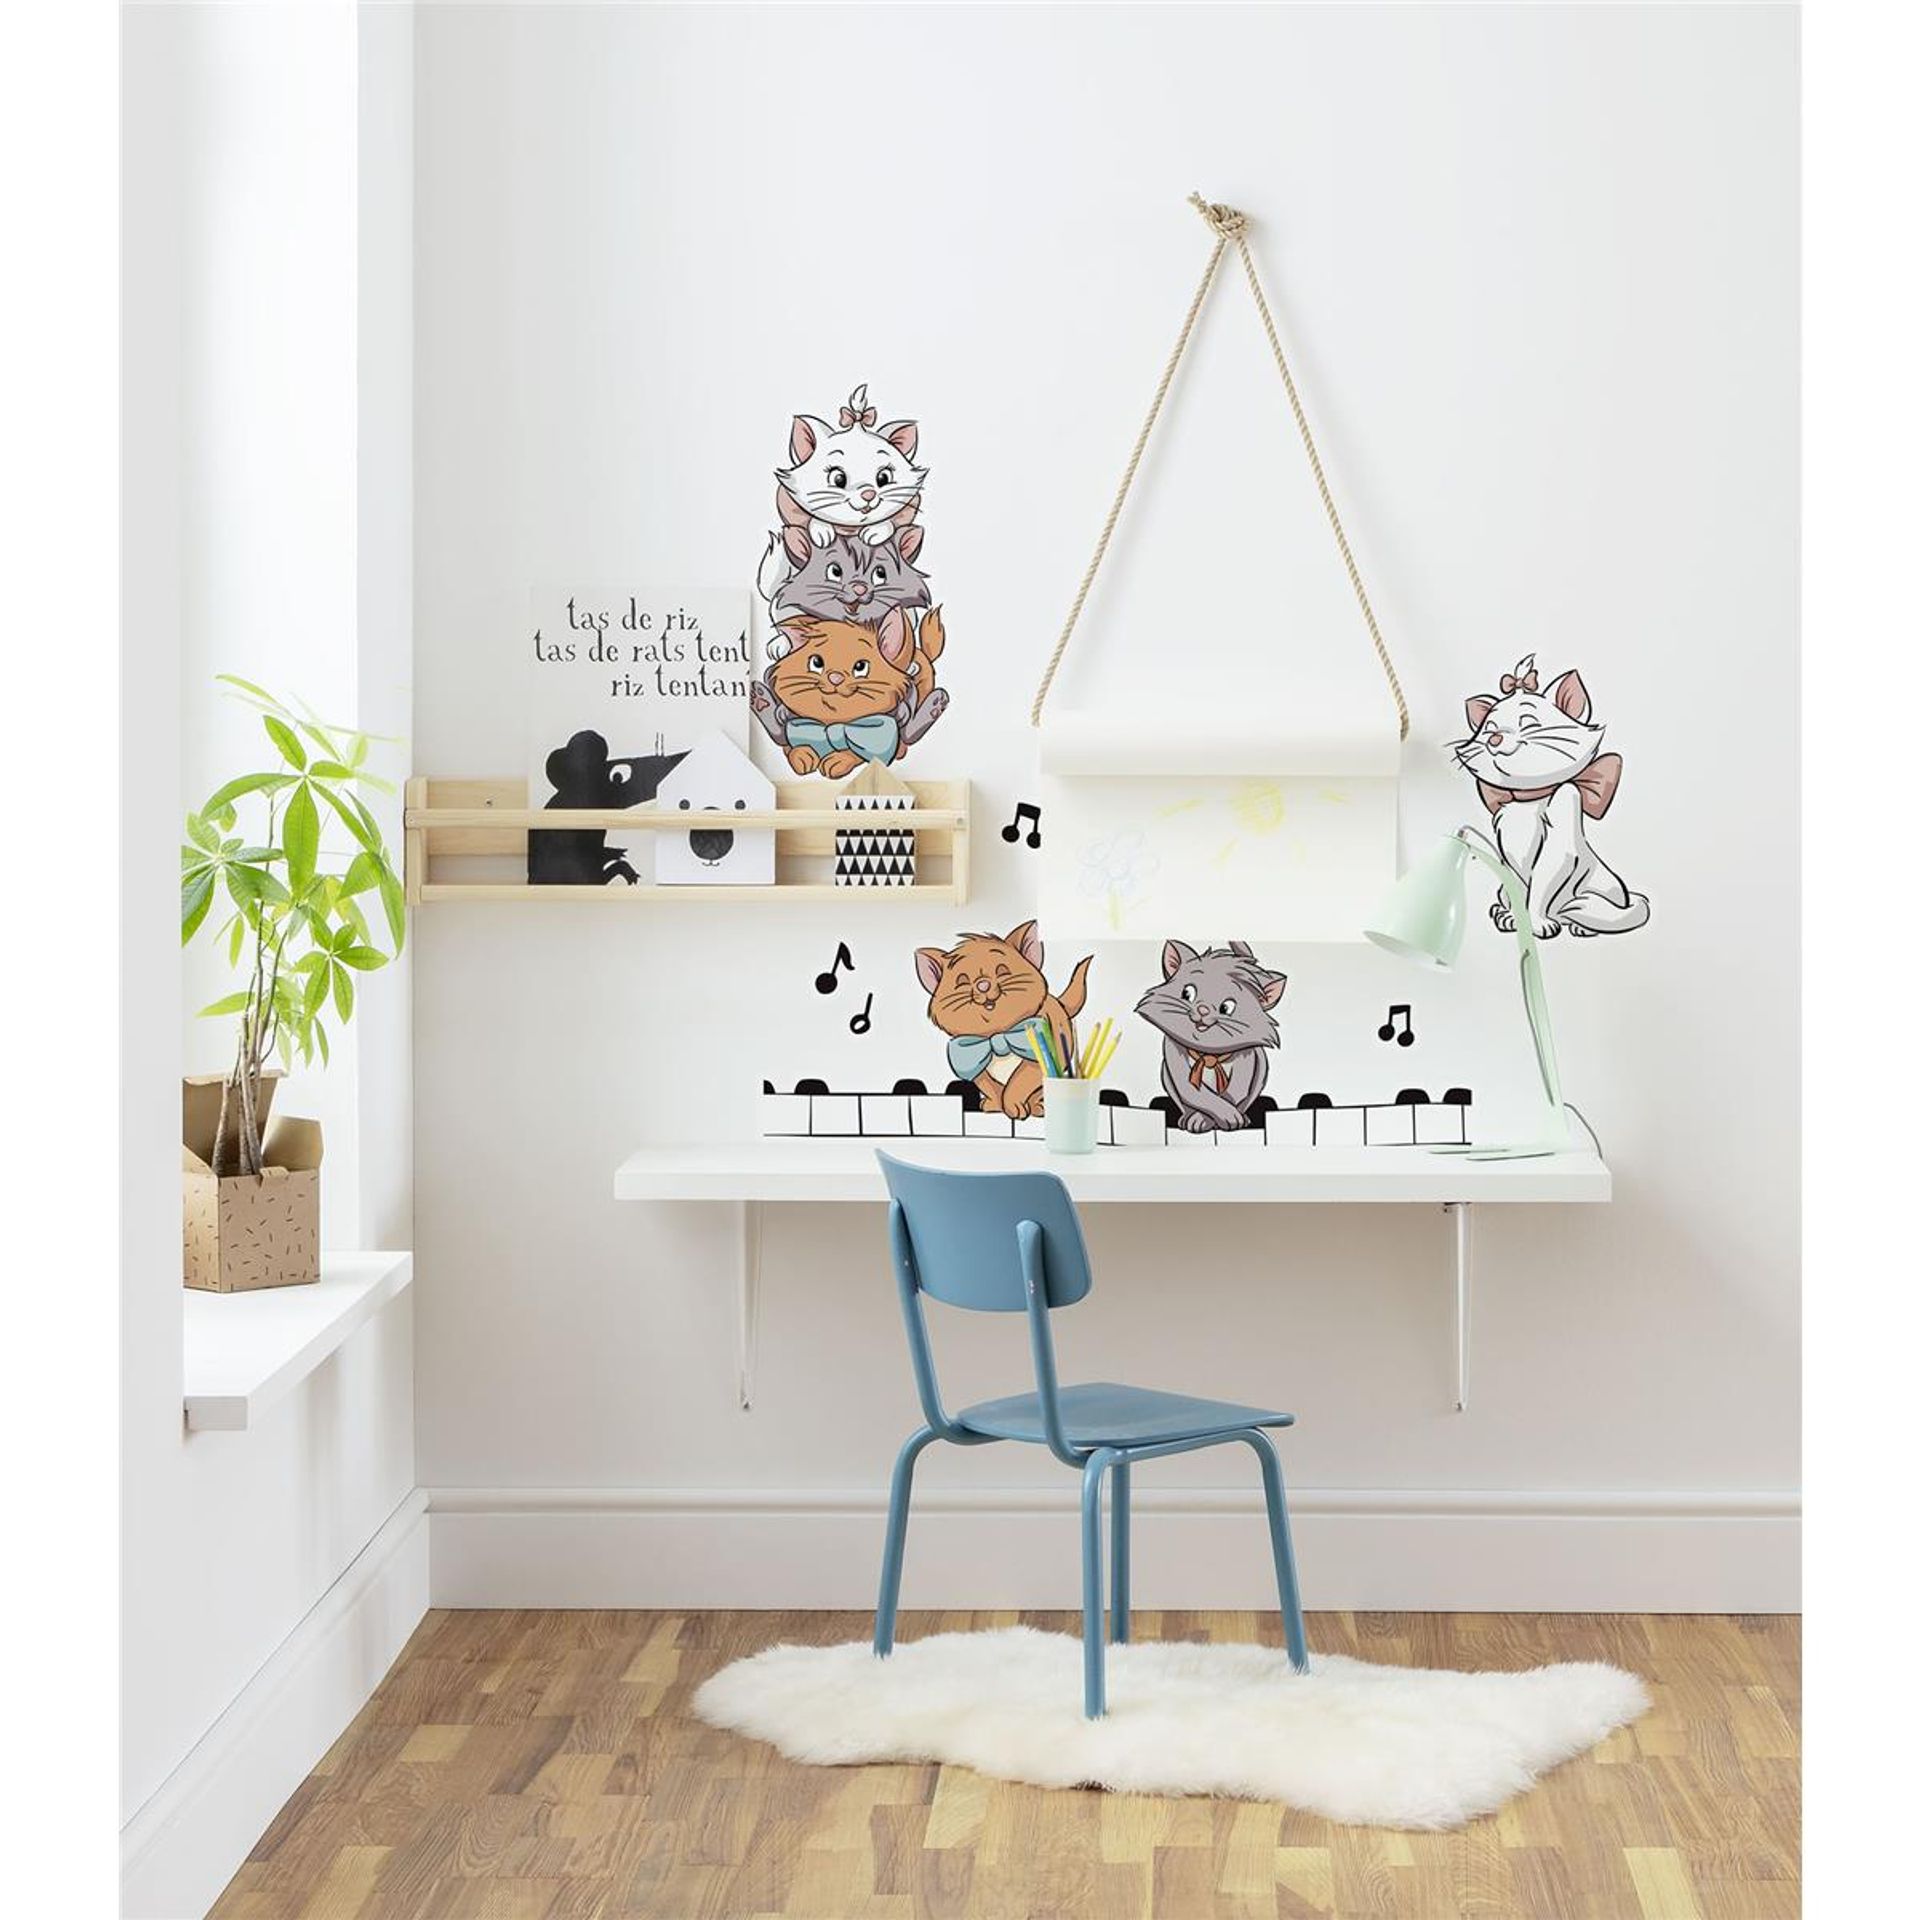 Wandtattoo - Aristocats Kittens  - Größe 50 x 70 cm